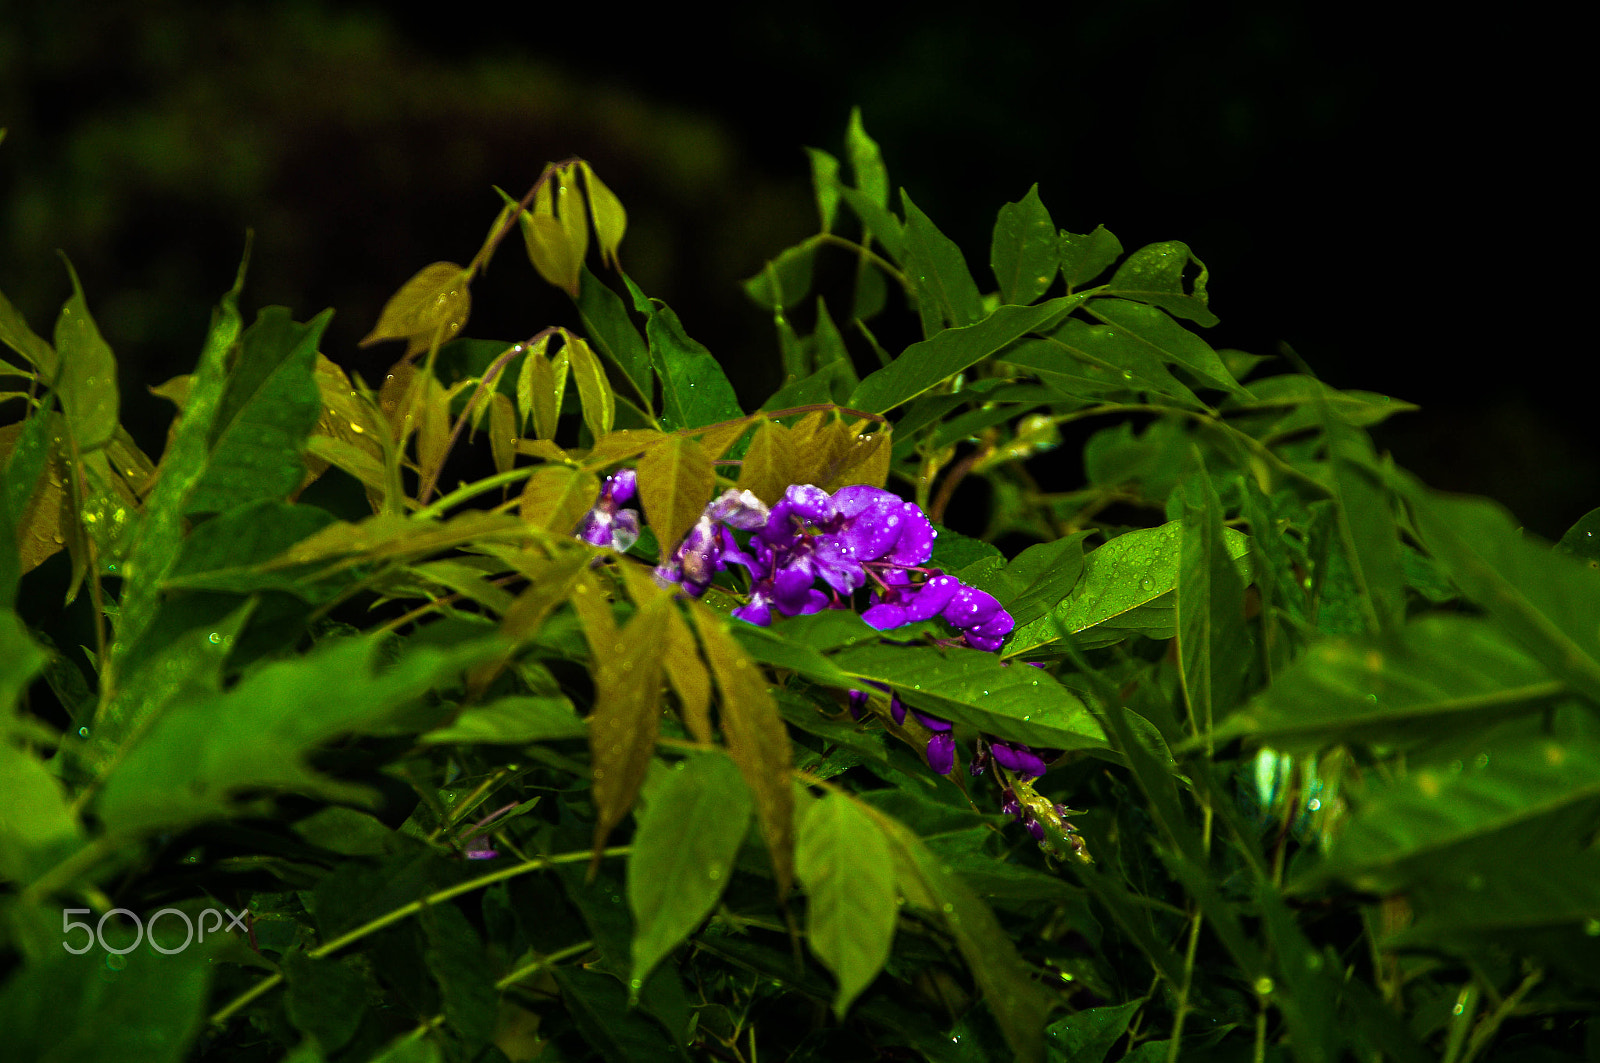 Pentax K-7 sample photo. Glycine violette photography